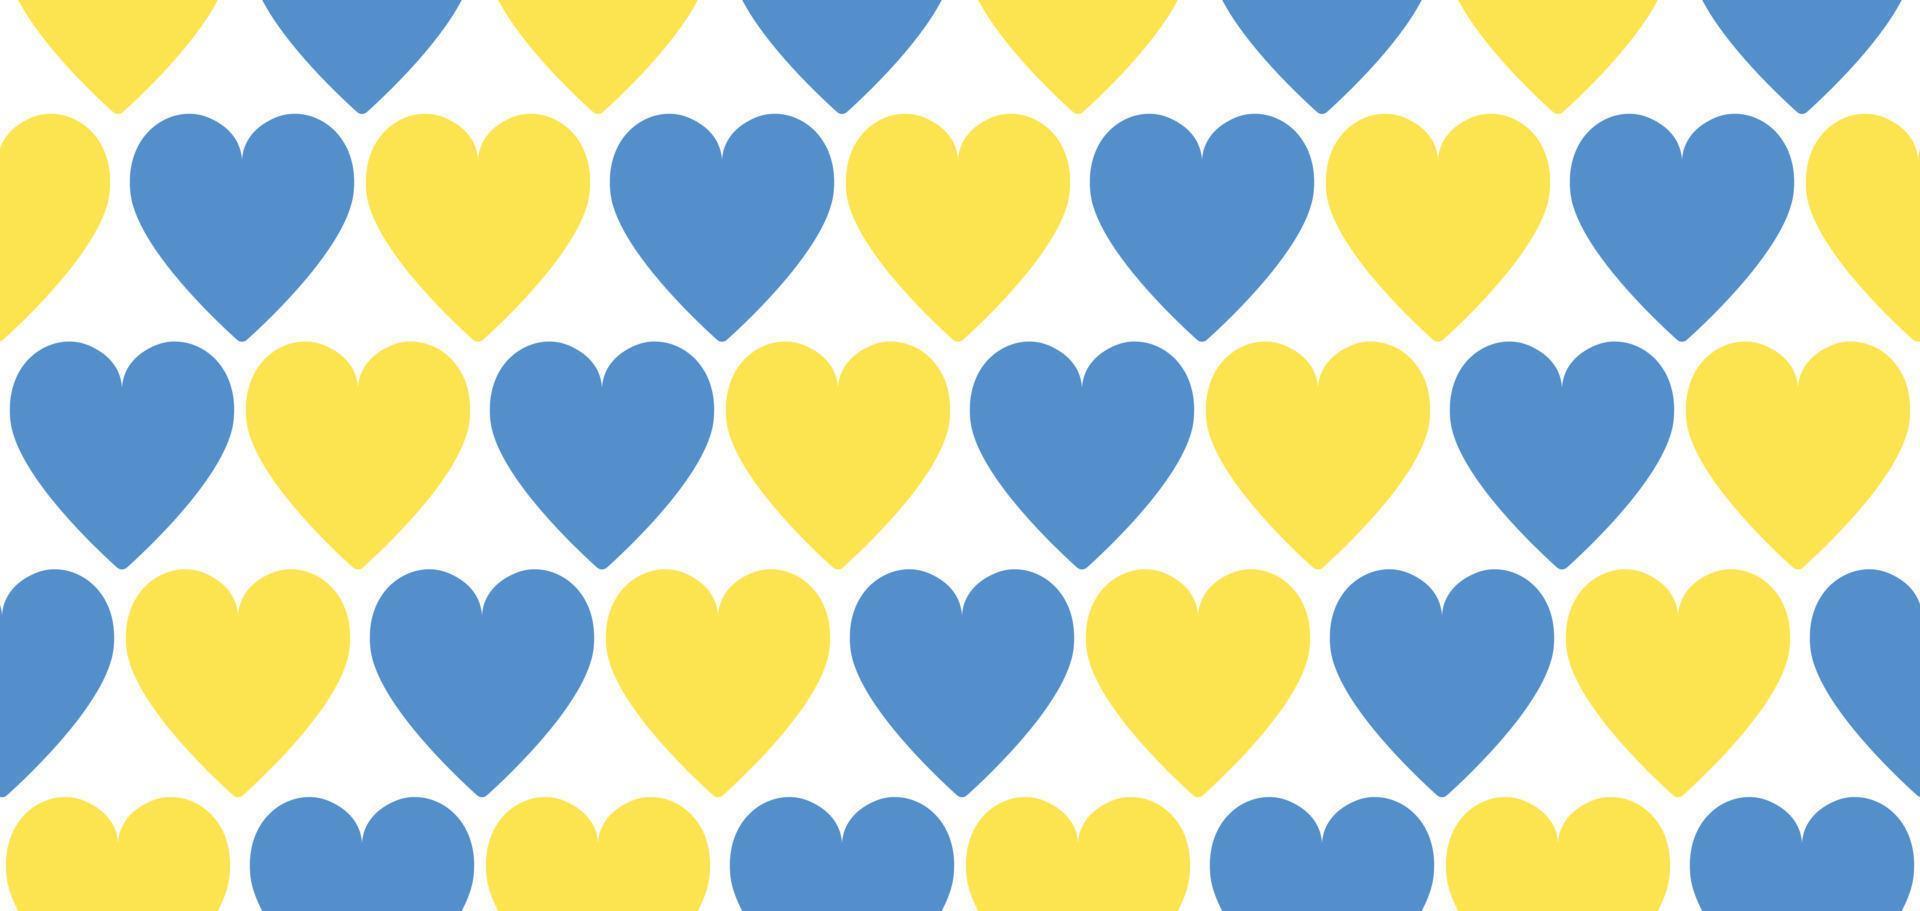 sfondo vettoriale senza cuciture con cuori a colori della bandiera ucraina - giallo e blu. ripetere lo sfondo strutturato senza cuciture. sostenere l'Ucraina